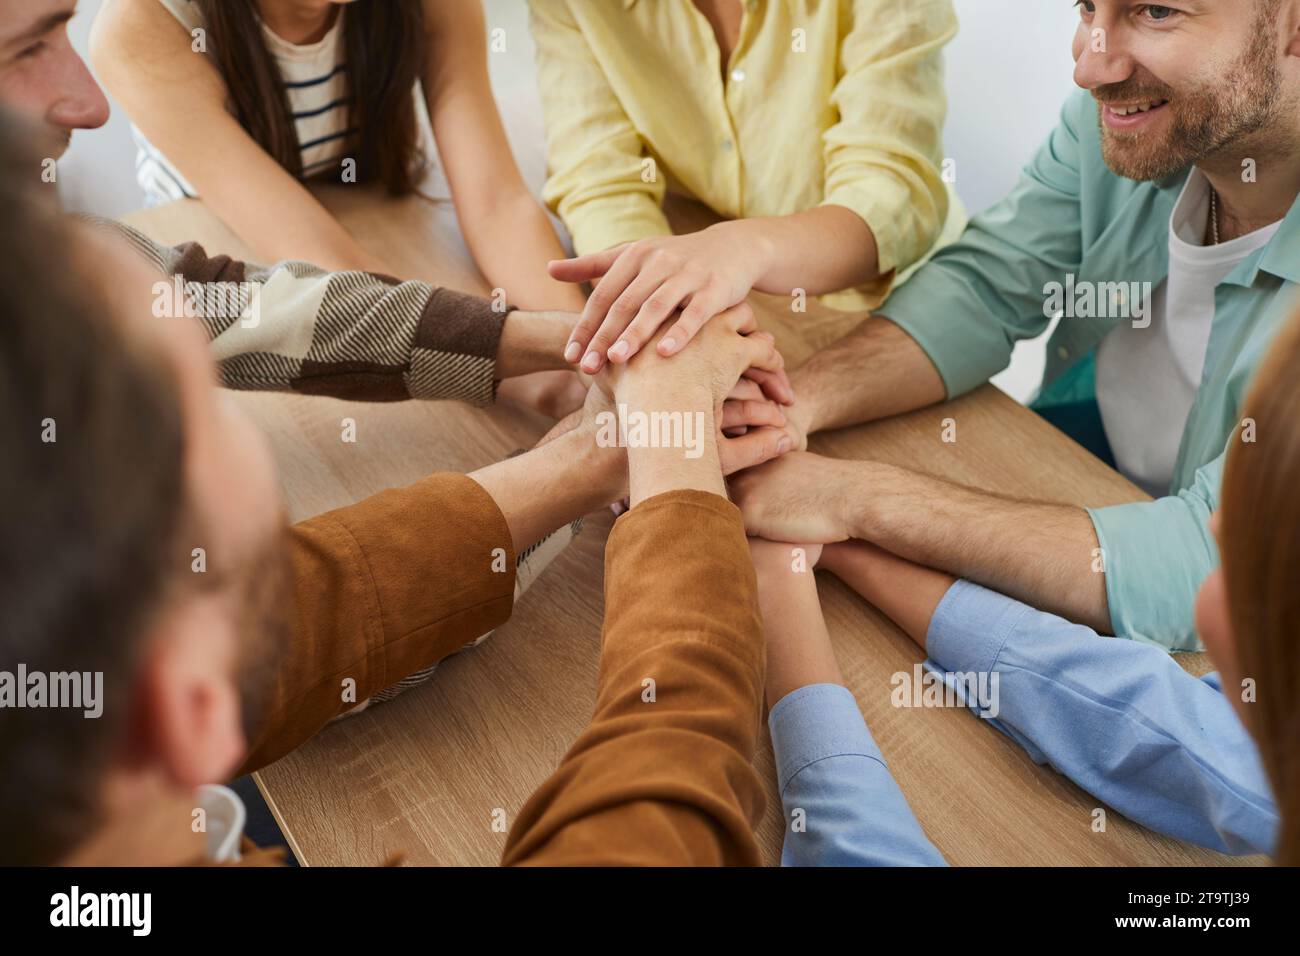 Ein Team von Freunden, das Hände stapelt, um das Konzept von Teamarbeit, Freundschaft und Unterstützung zu zeigen Stockfoto